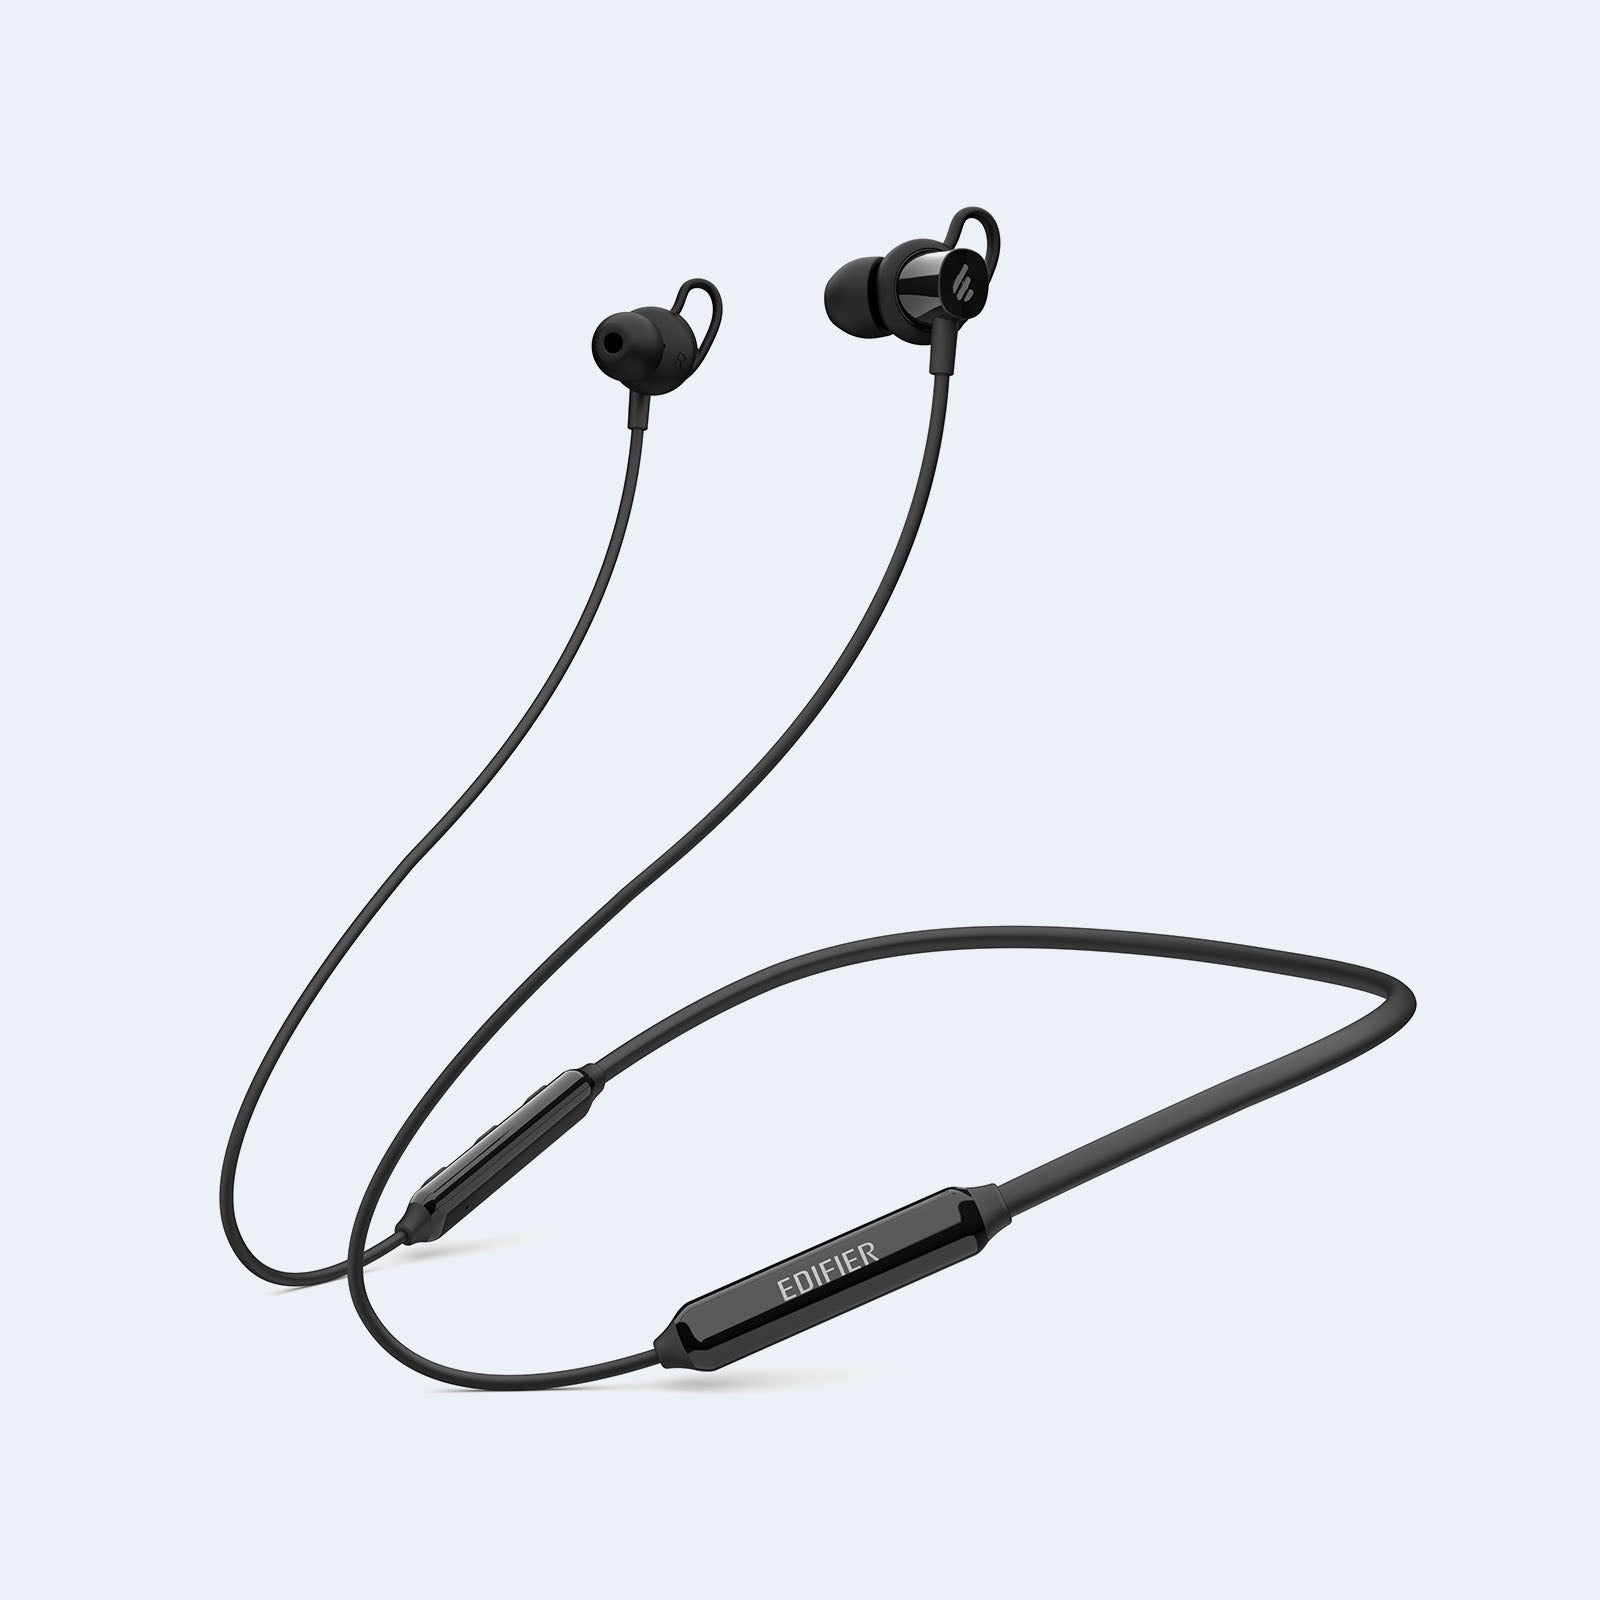 Edifier W200BT SE Bluetooth 5.0 in-Ear Sports Earphones